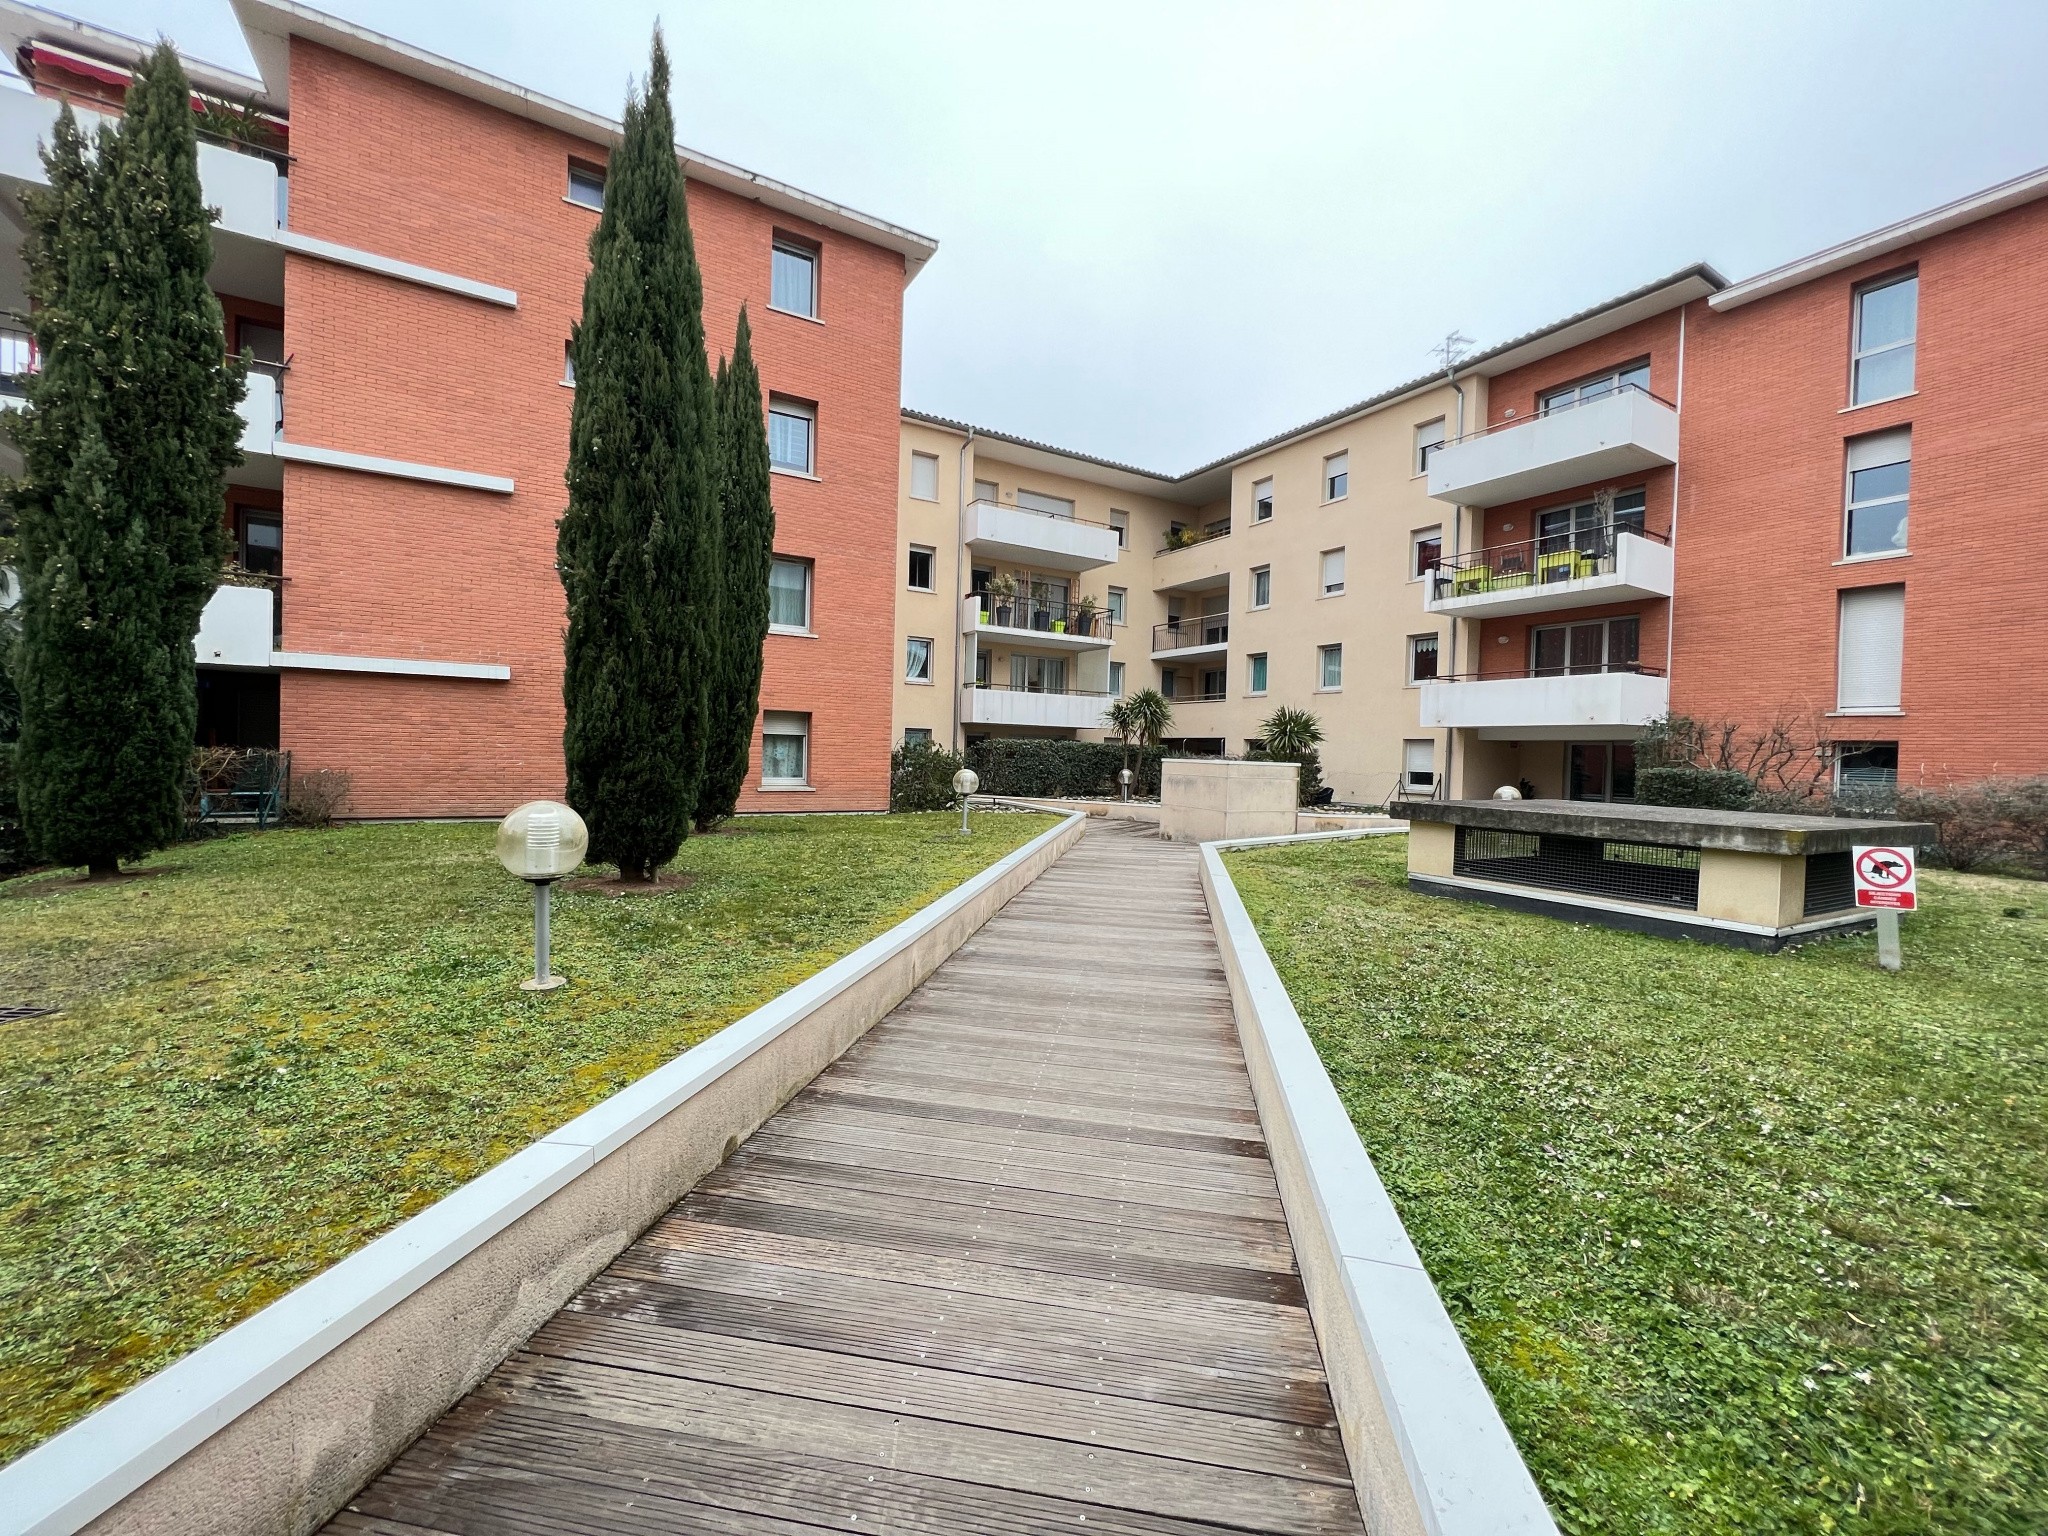 Vente Appartement à Castanet-Tolosan 2 pièces